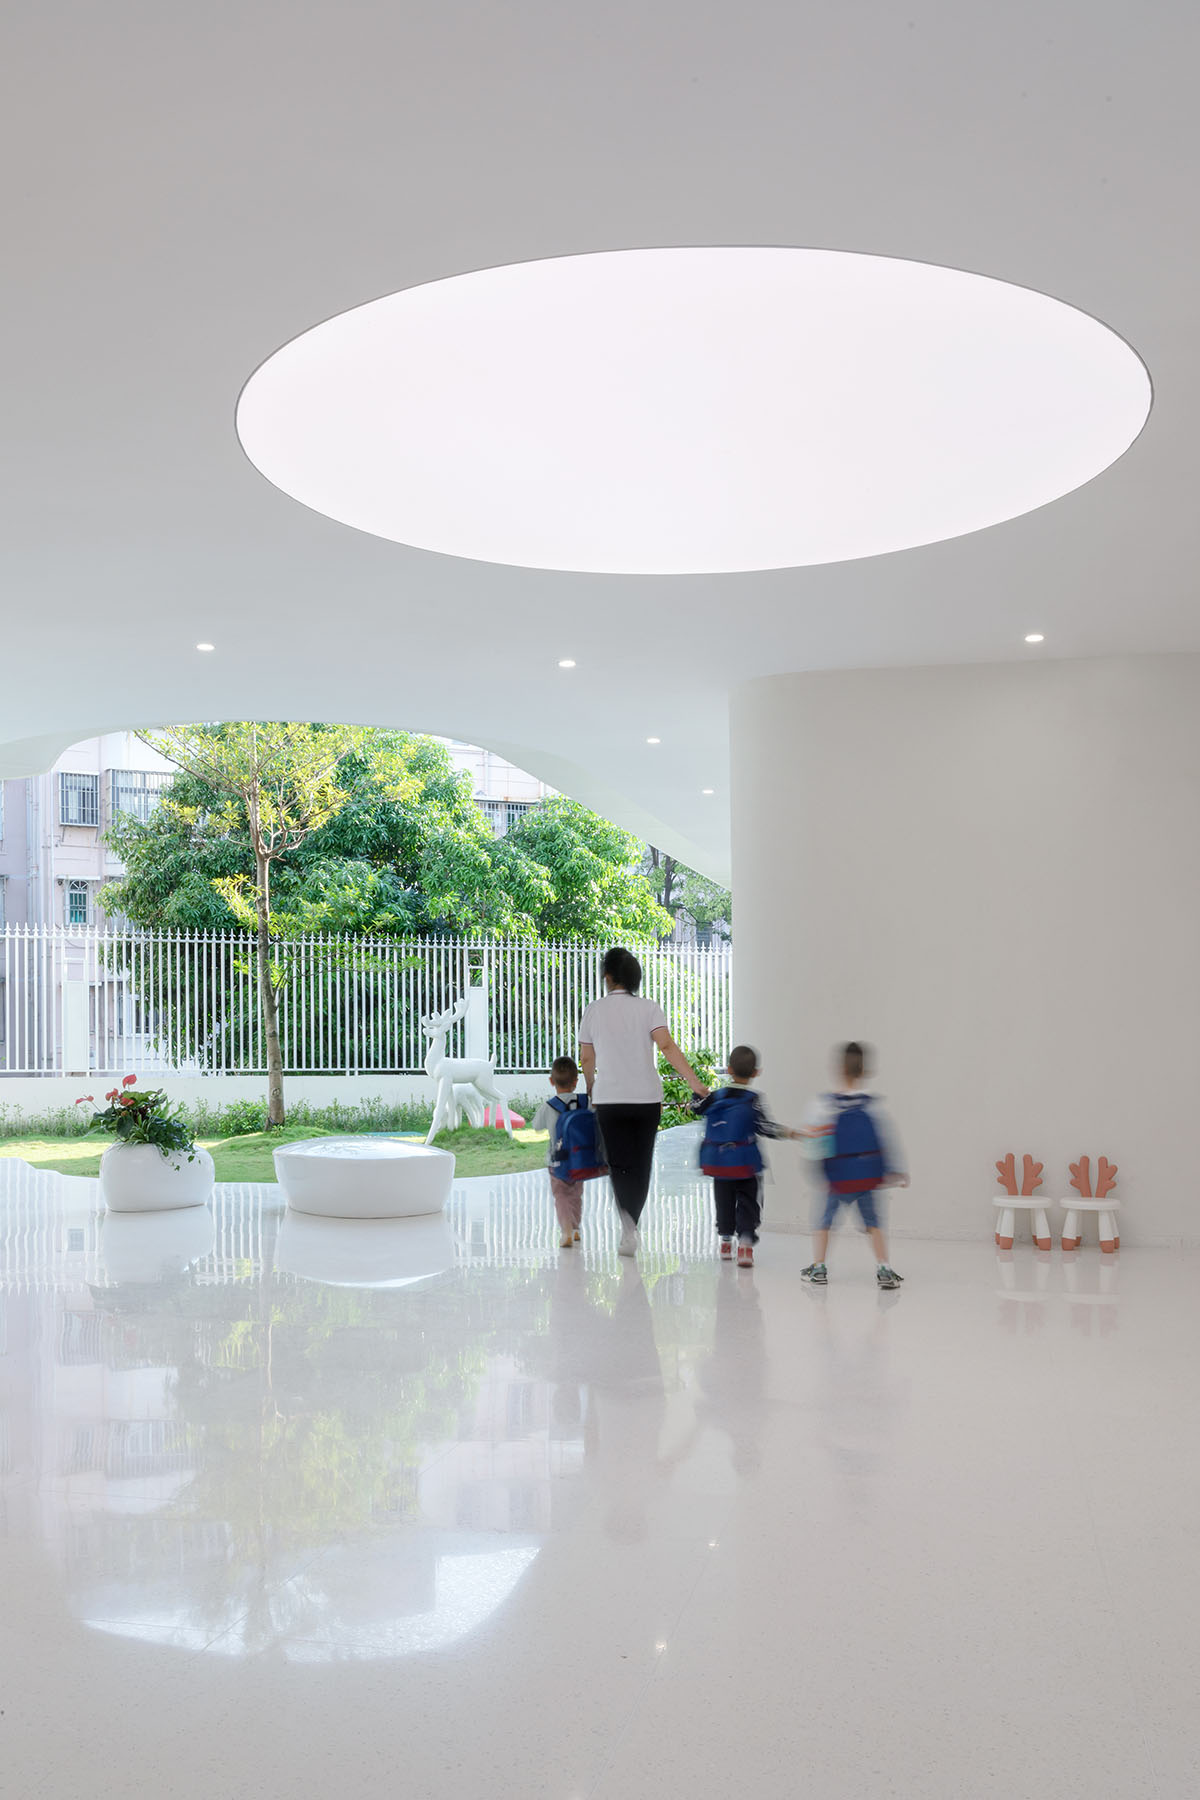 Yunchao Xu/Atelier Apeiron built a kindergarten with 